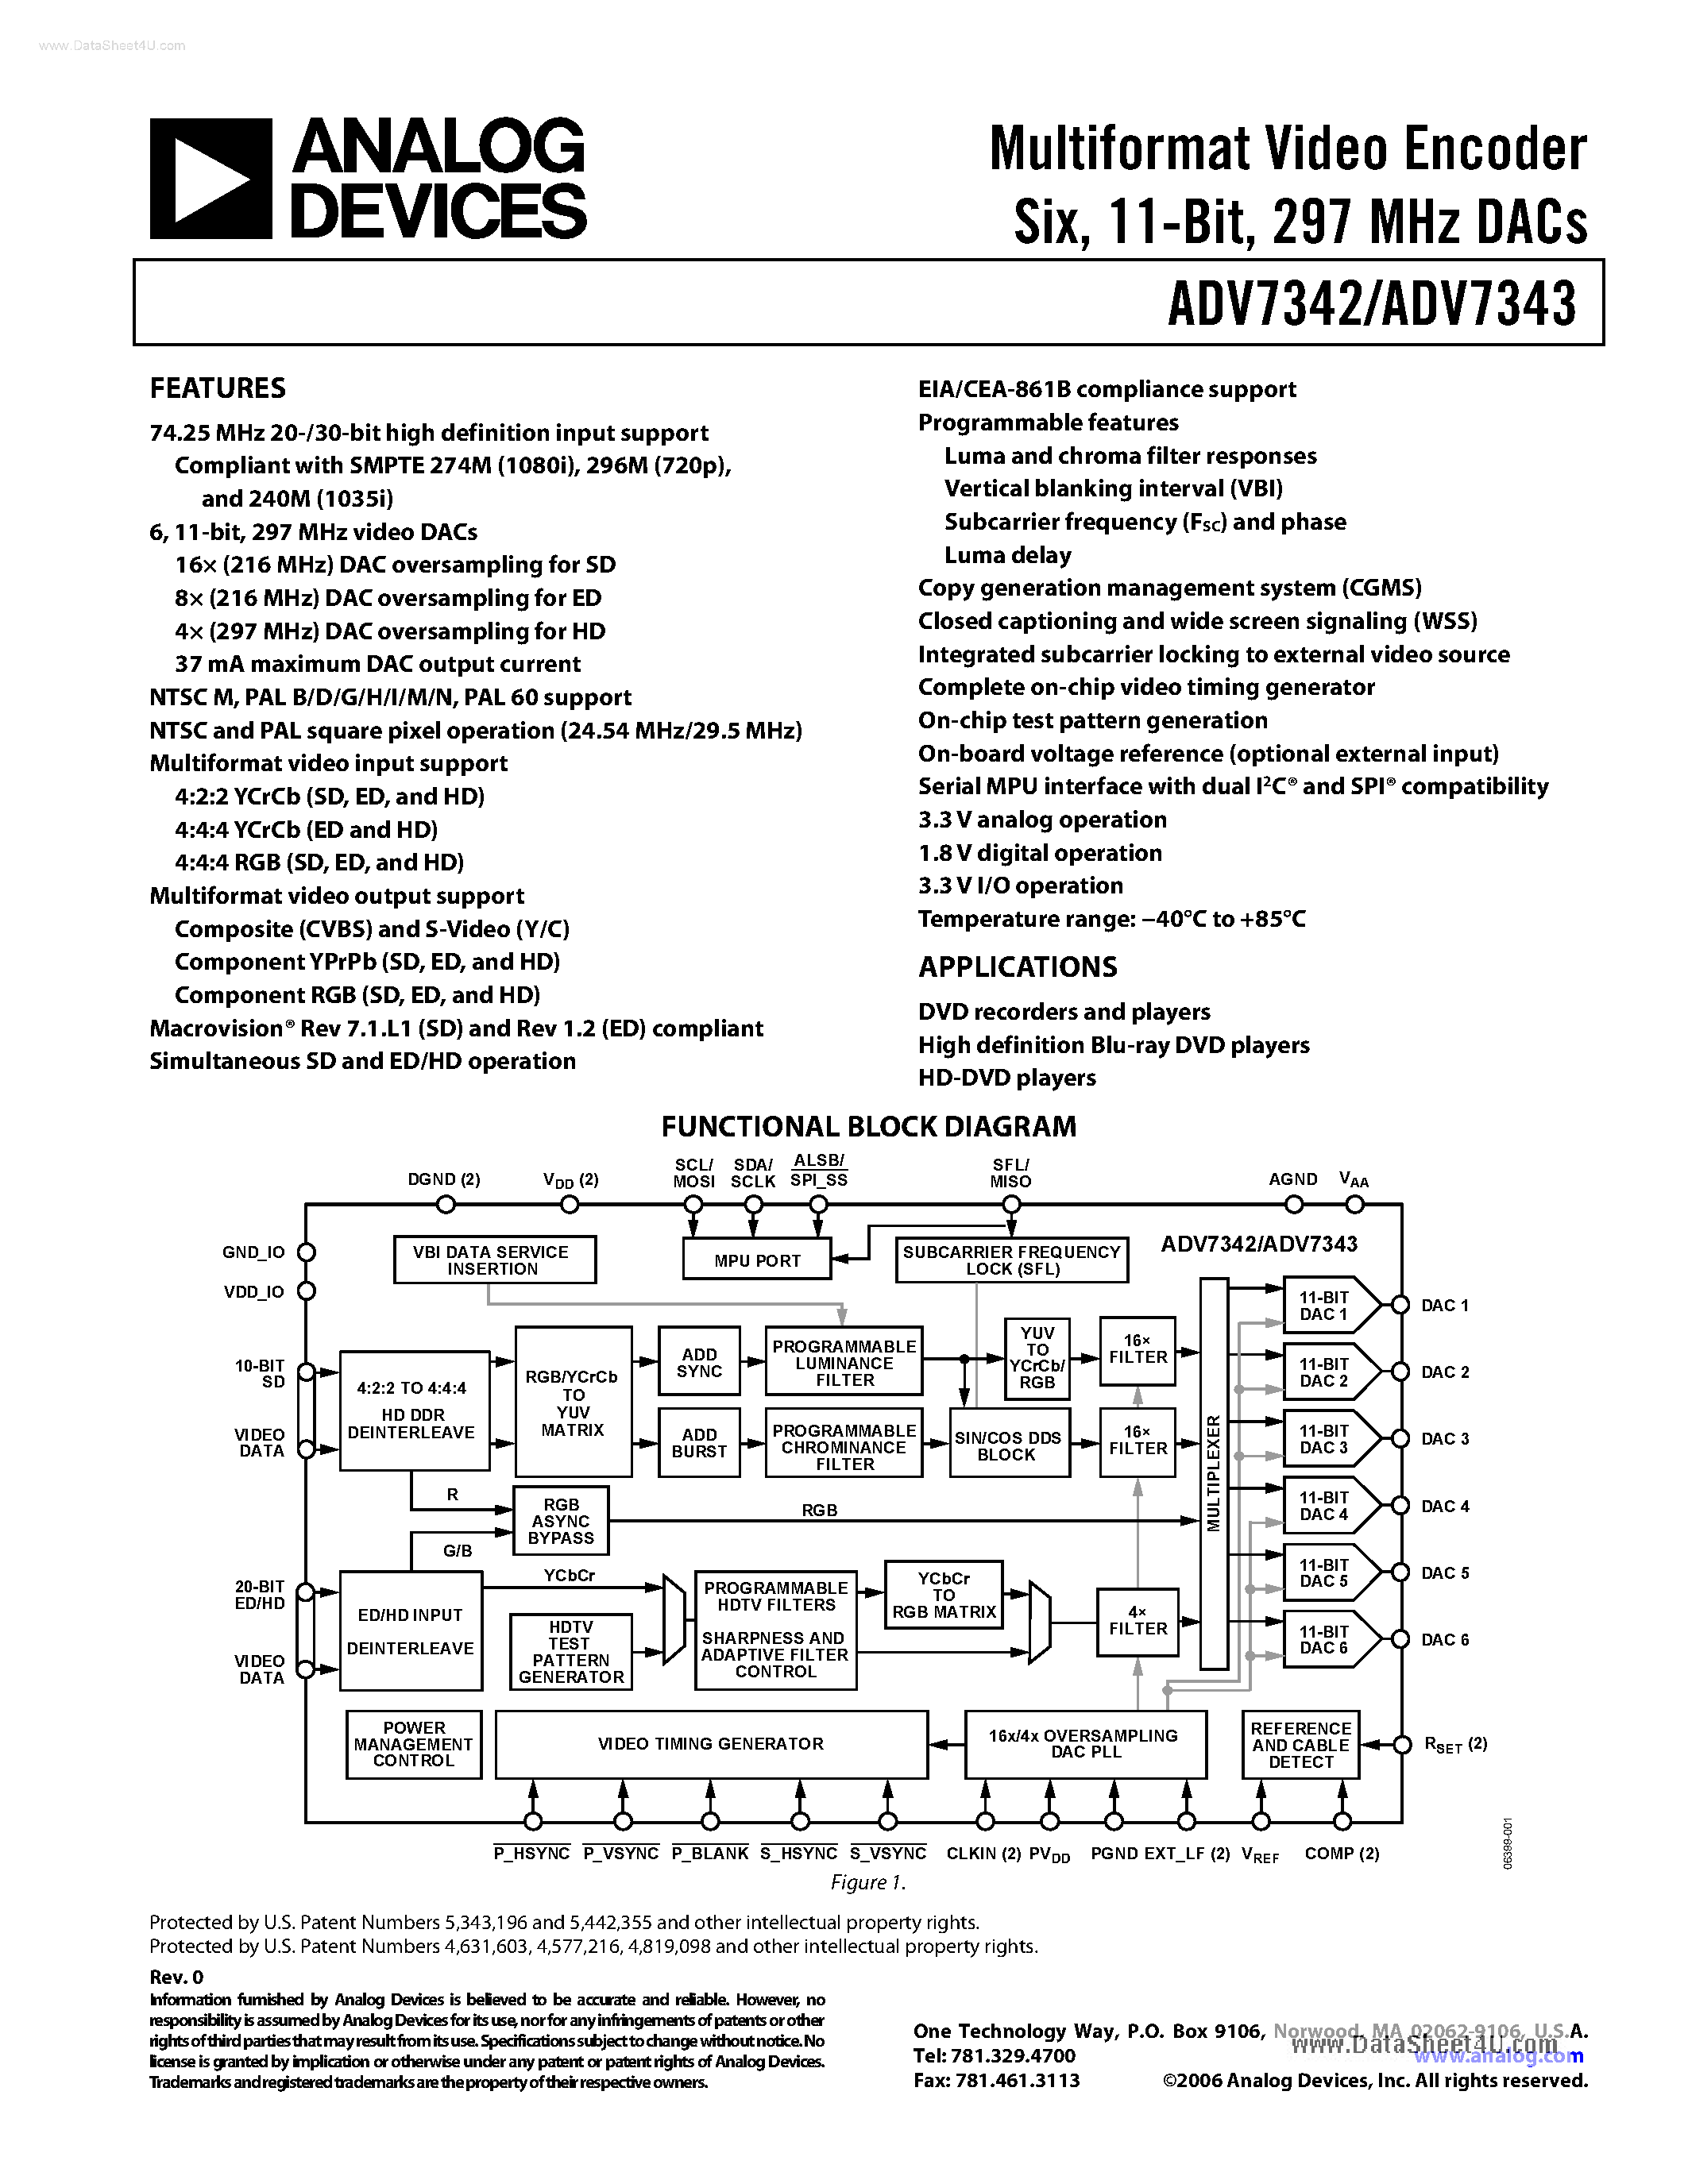 Даташит ADV7342 - (ADV7342 / ADV7343) Multiformat Video Encoder страница 1